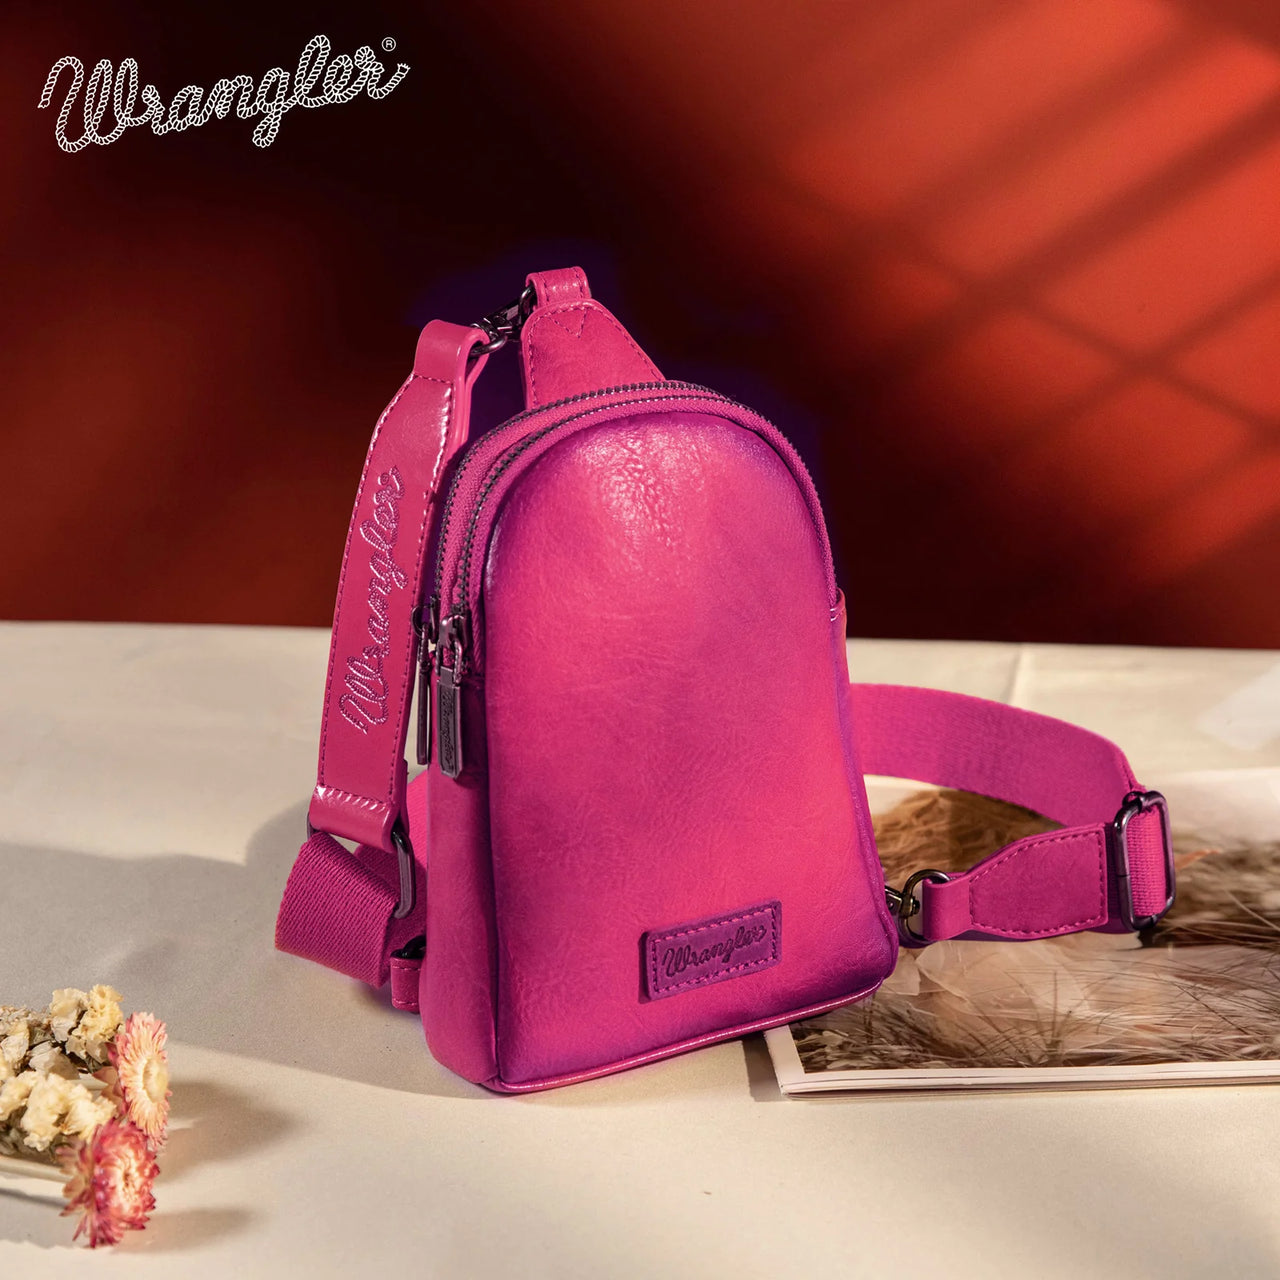 Wrangler Women's Sling Bag/Crossbody/Chest Bag - Hot Pink (A)